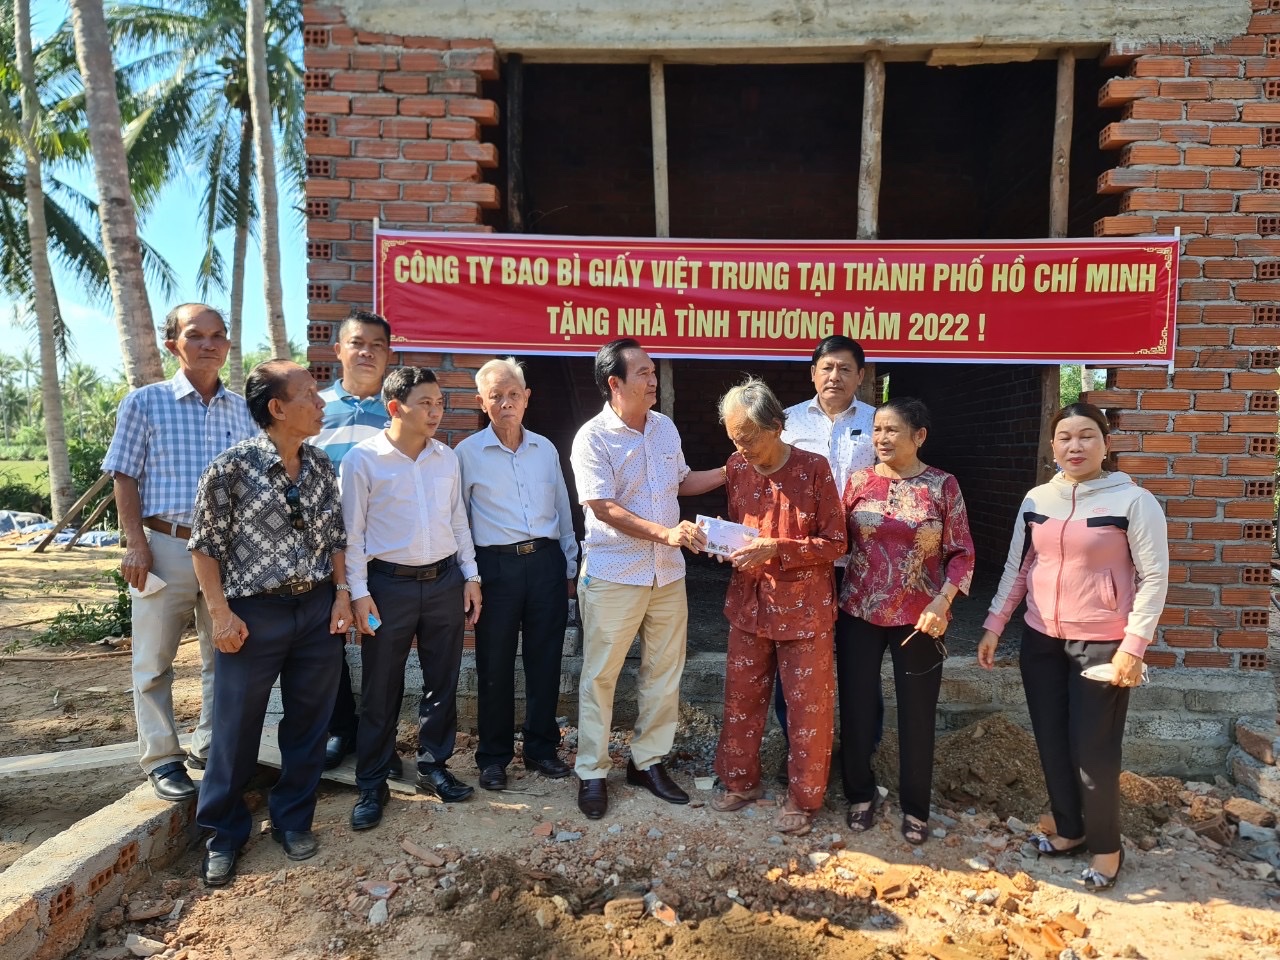 Công ty TNHH Bao Bì giấy Việt Trung: Trao tặng 3 căn nhà tình thương cho các gia đình khó khăn tại Tỉnh Bình Định.